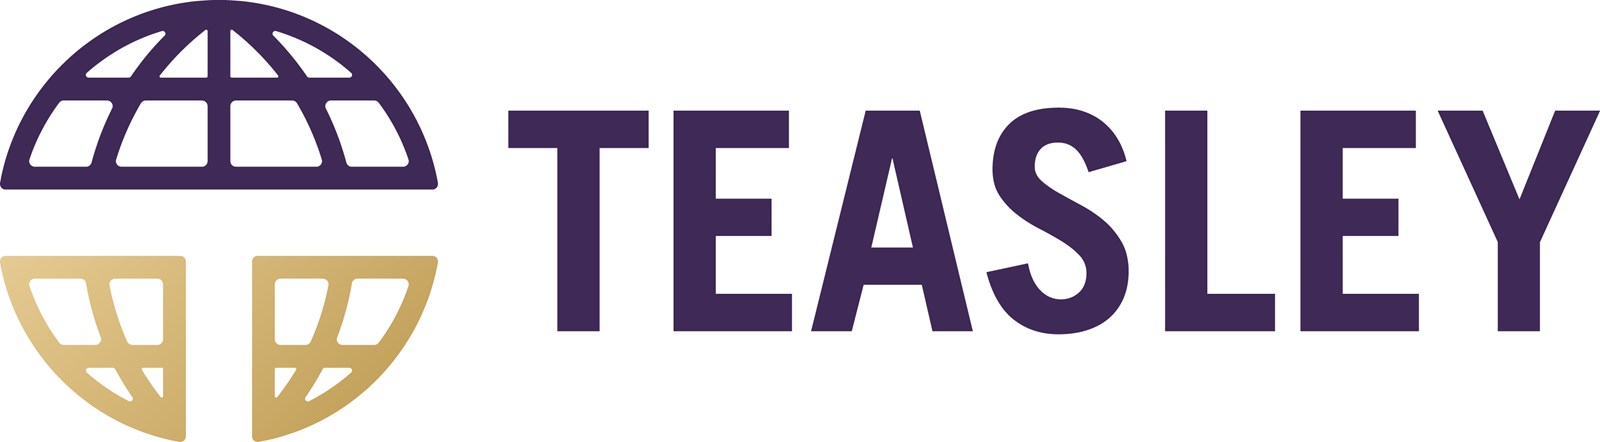 teasley-elementary-school-logo-mark-full-color-rgb.jpg